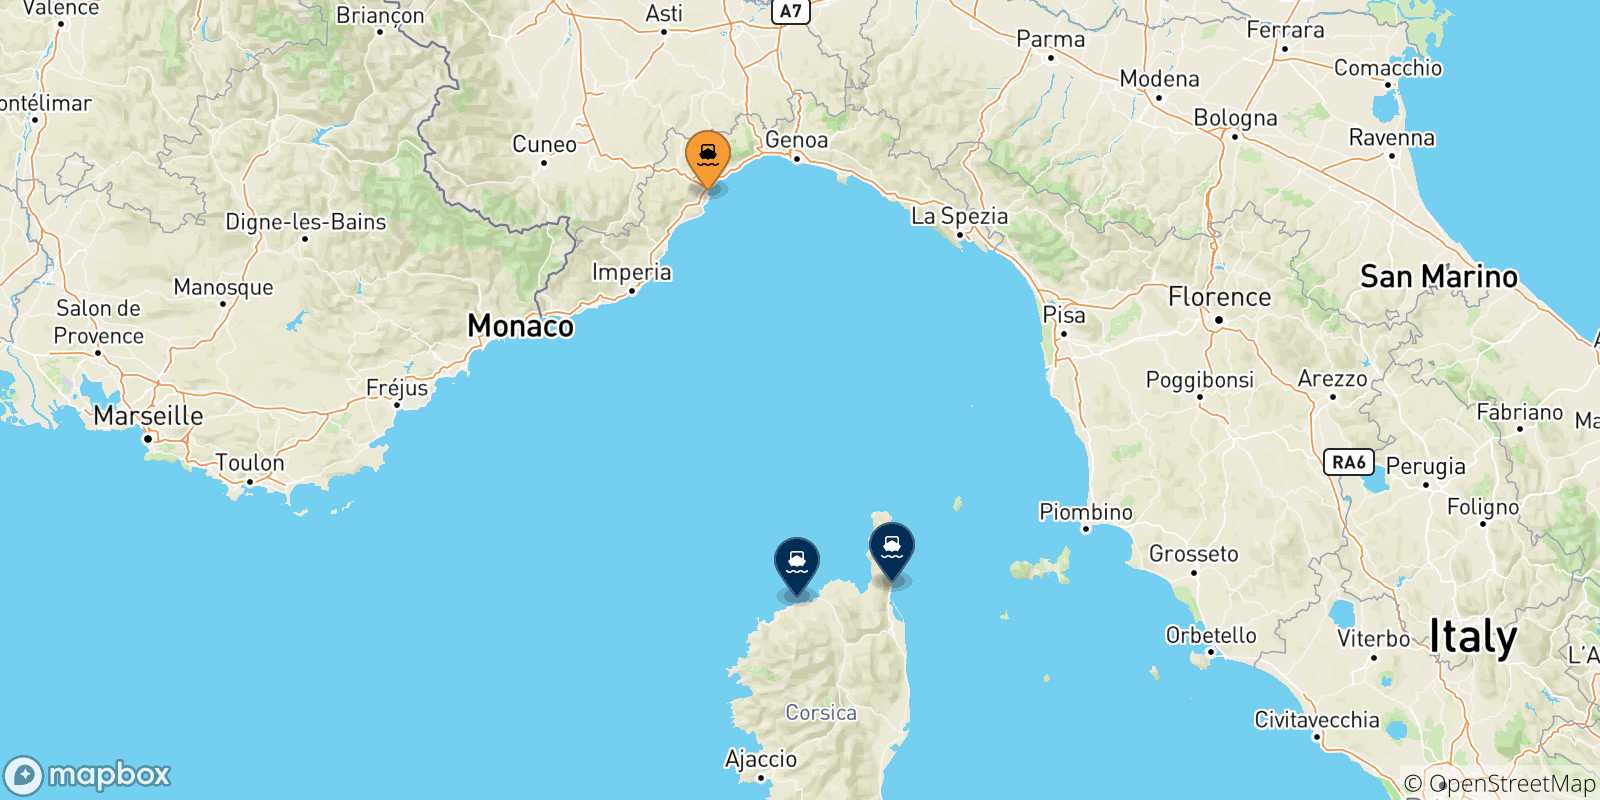 Mappa delle possibili rotte tra Savona e la Francia